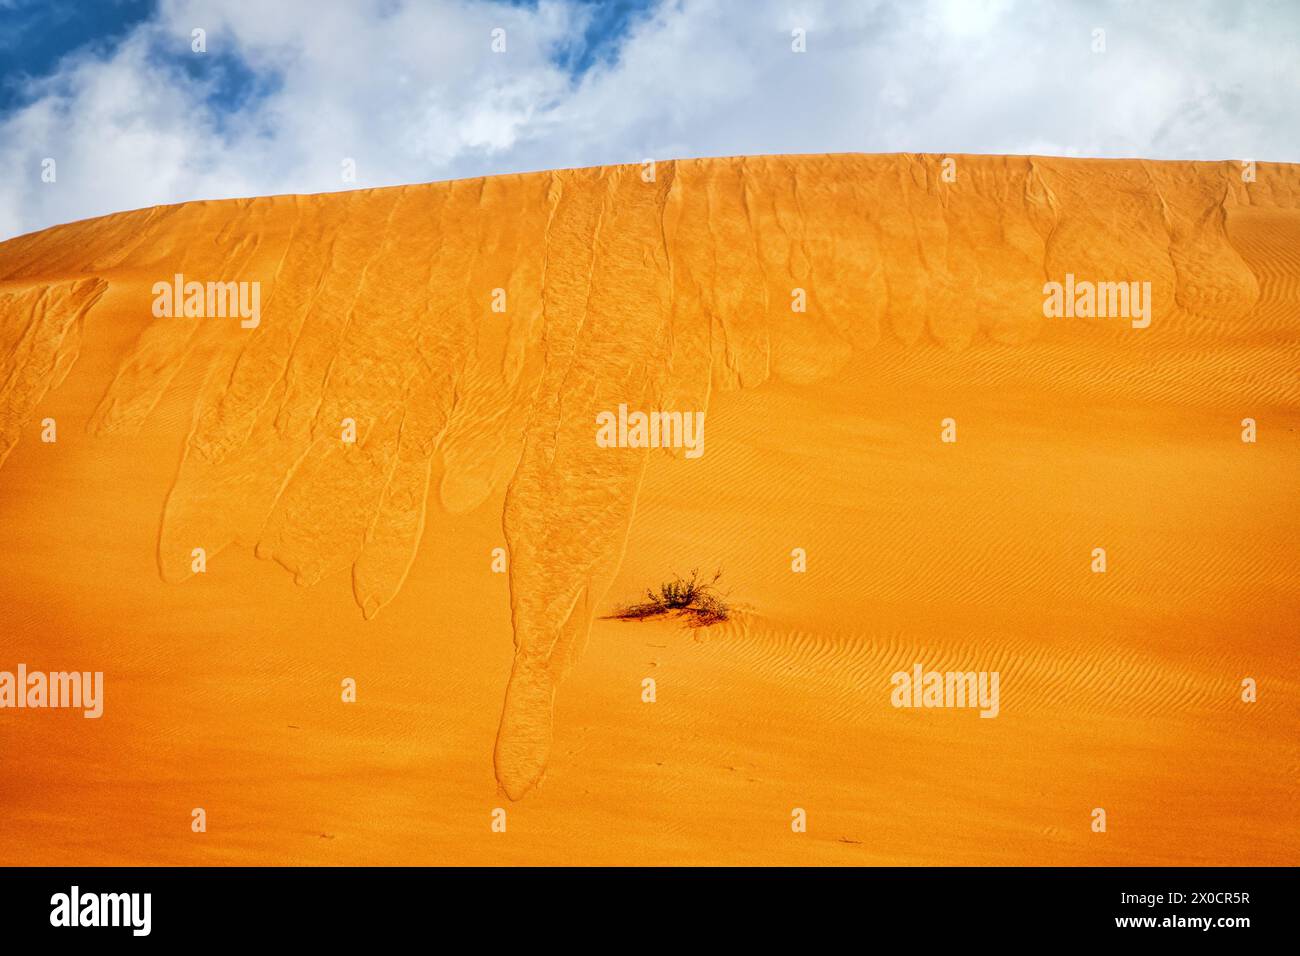 Sandfall. Sanderdrutsch vom Kamm einer roten Düne (Eisenoxid) infolge erhöhter Belastung (aber nicht des Windes). Barkhan in der Arabischen Wüste. Stockfoto